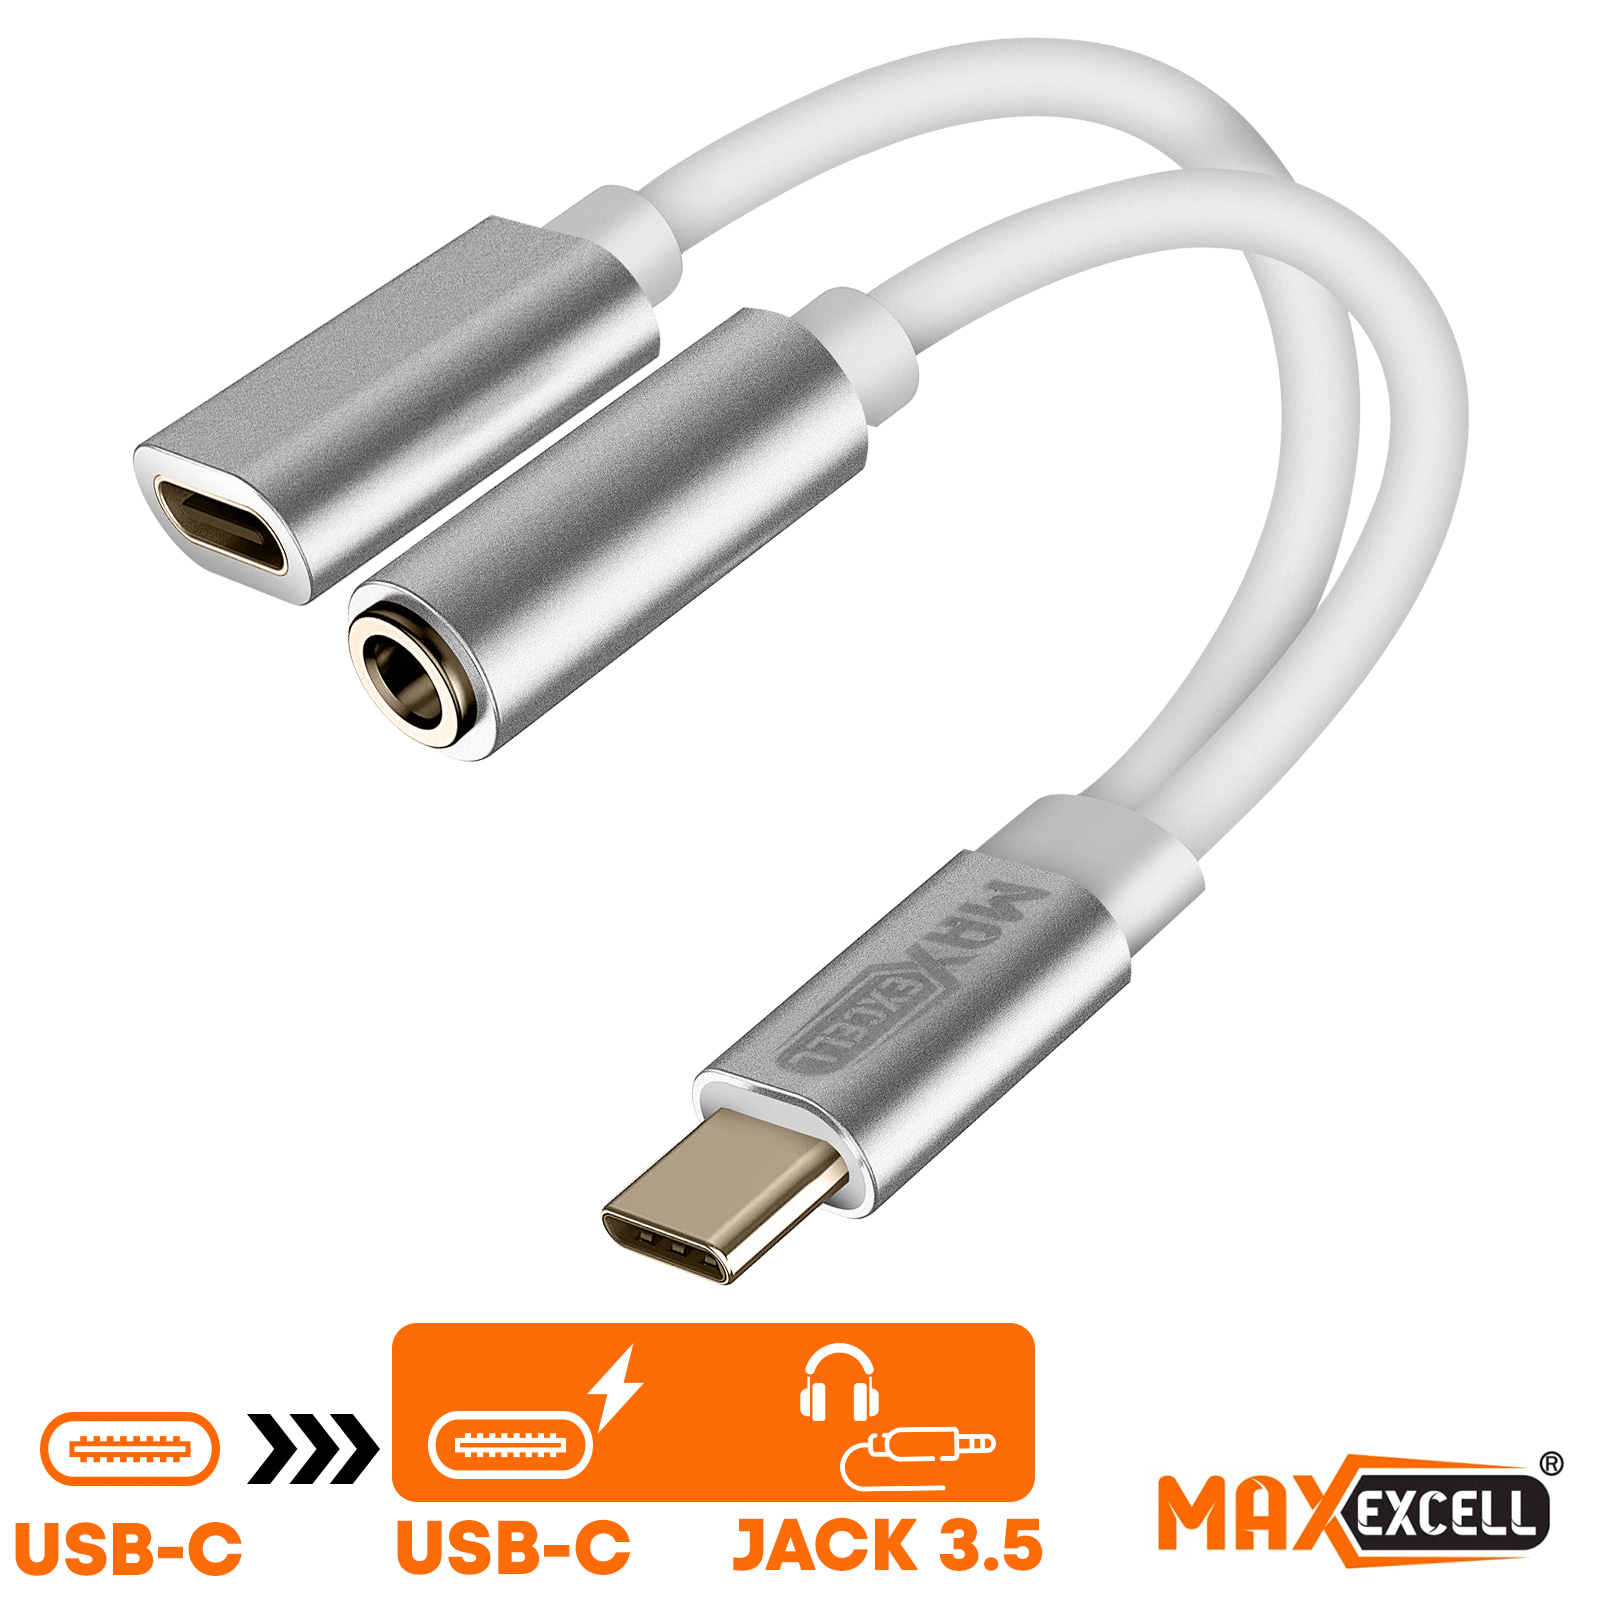 Adaptador USB-C 2en1 a USB-C Carga y Audio 3.5mm, Max Excel - Plateado y  Blanco - Spain